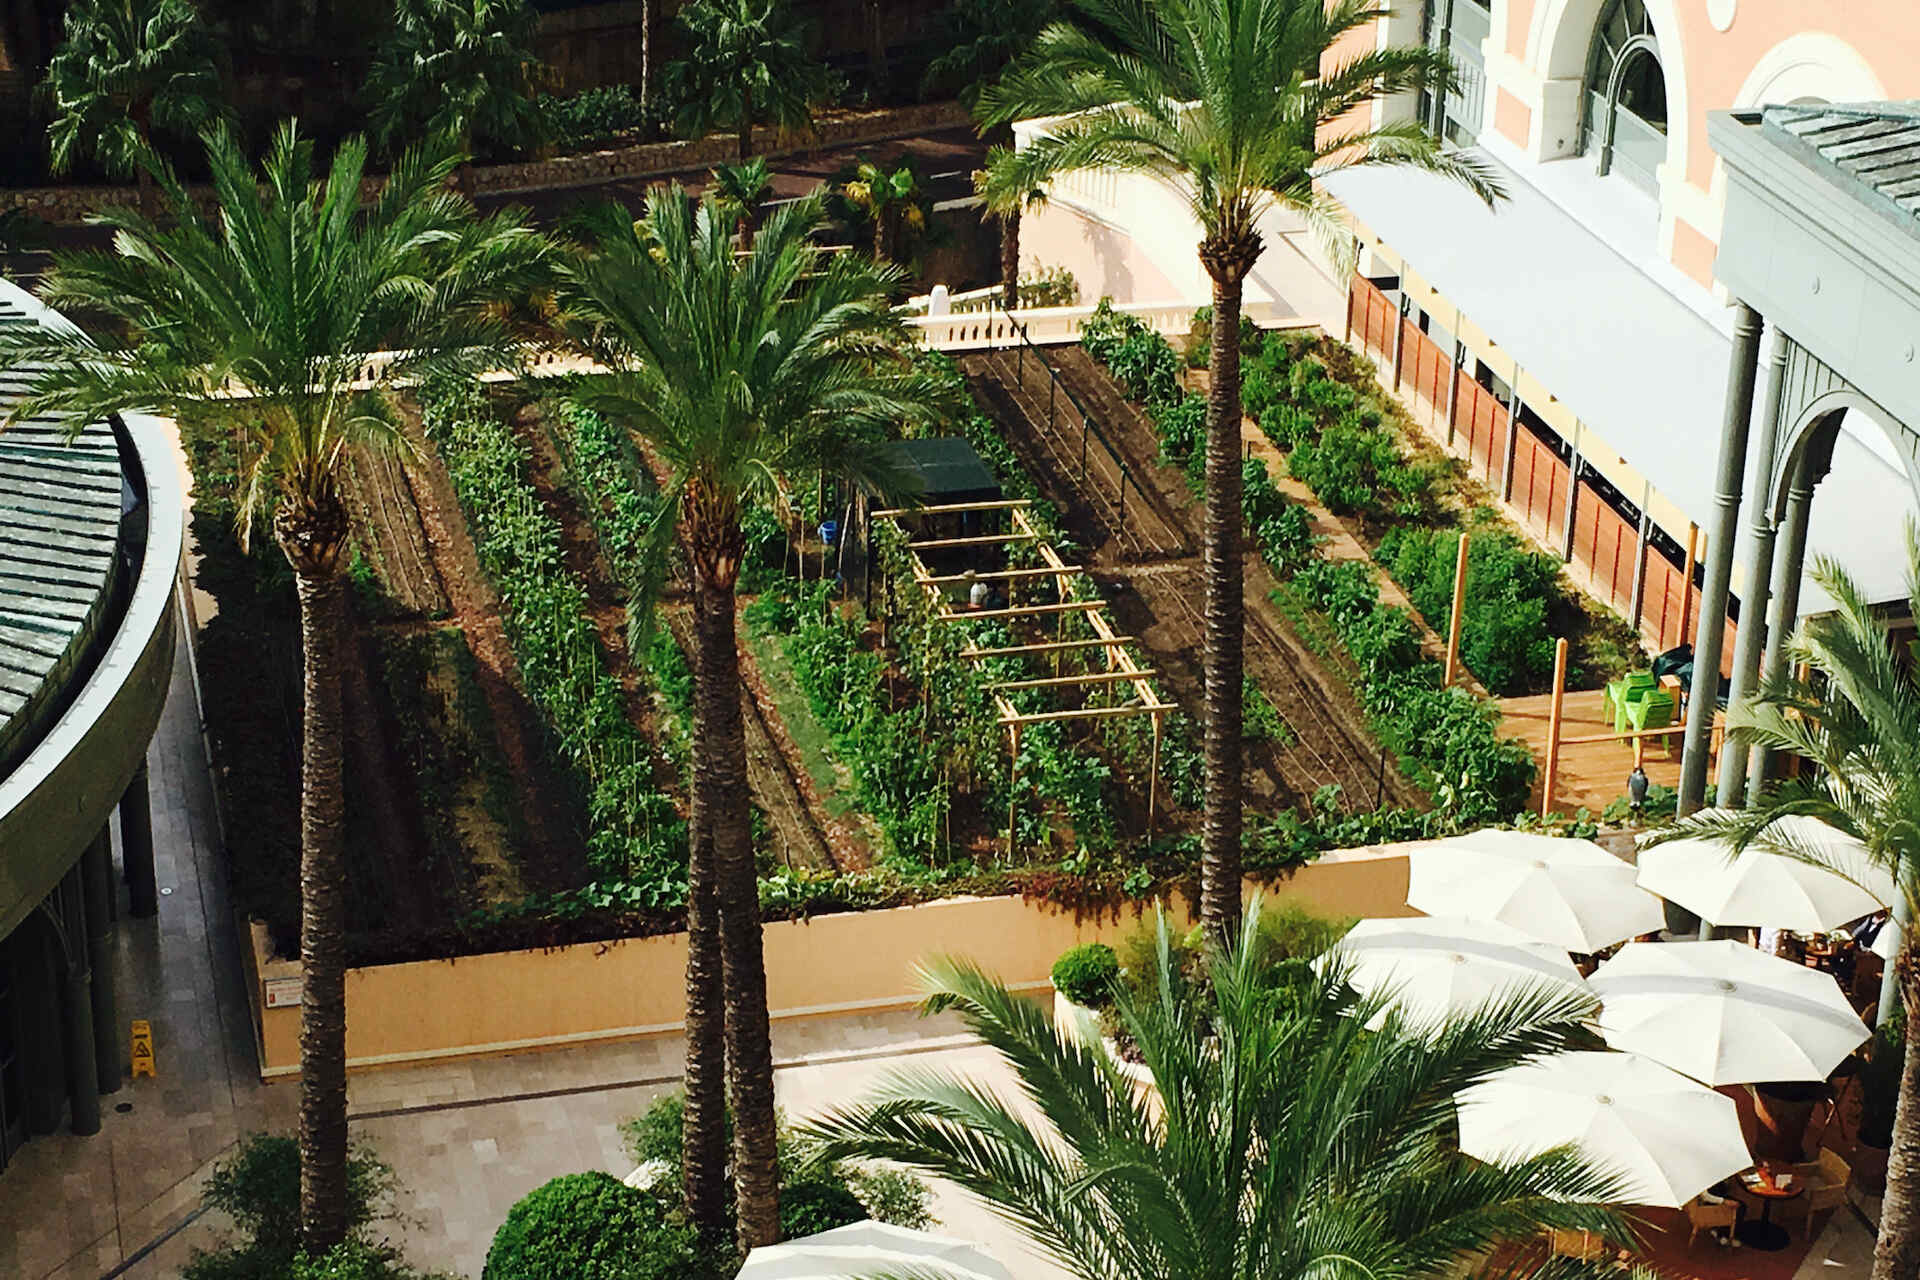 Société des Bains de Mer, Monte-Carlo'da sıfır kilometrelik sebze bahçeleriyle "yeşil" hedefler peşinde koşuyor